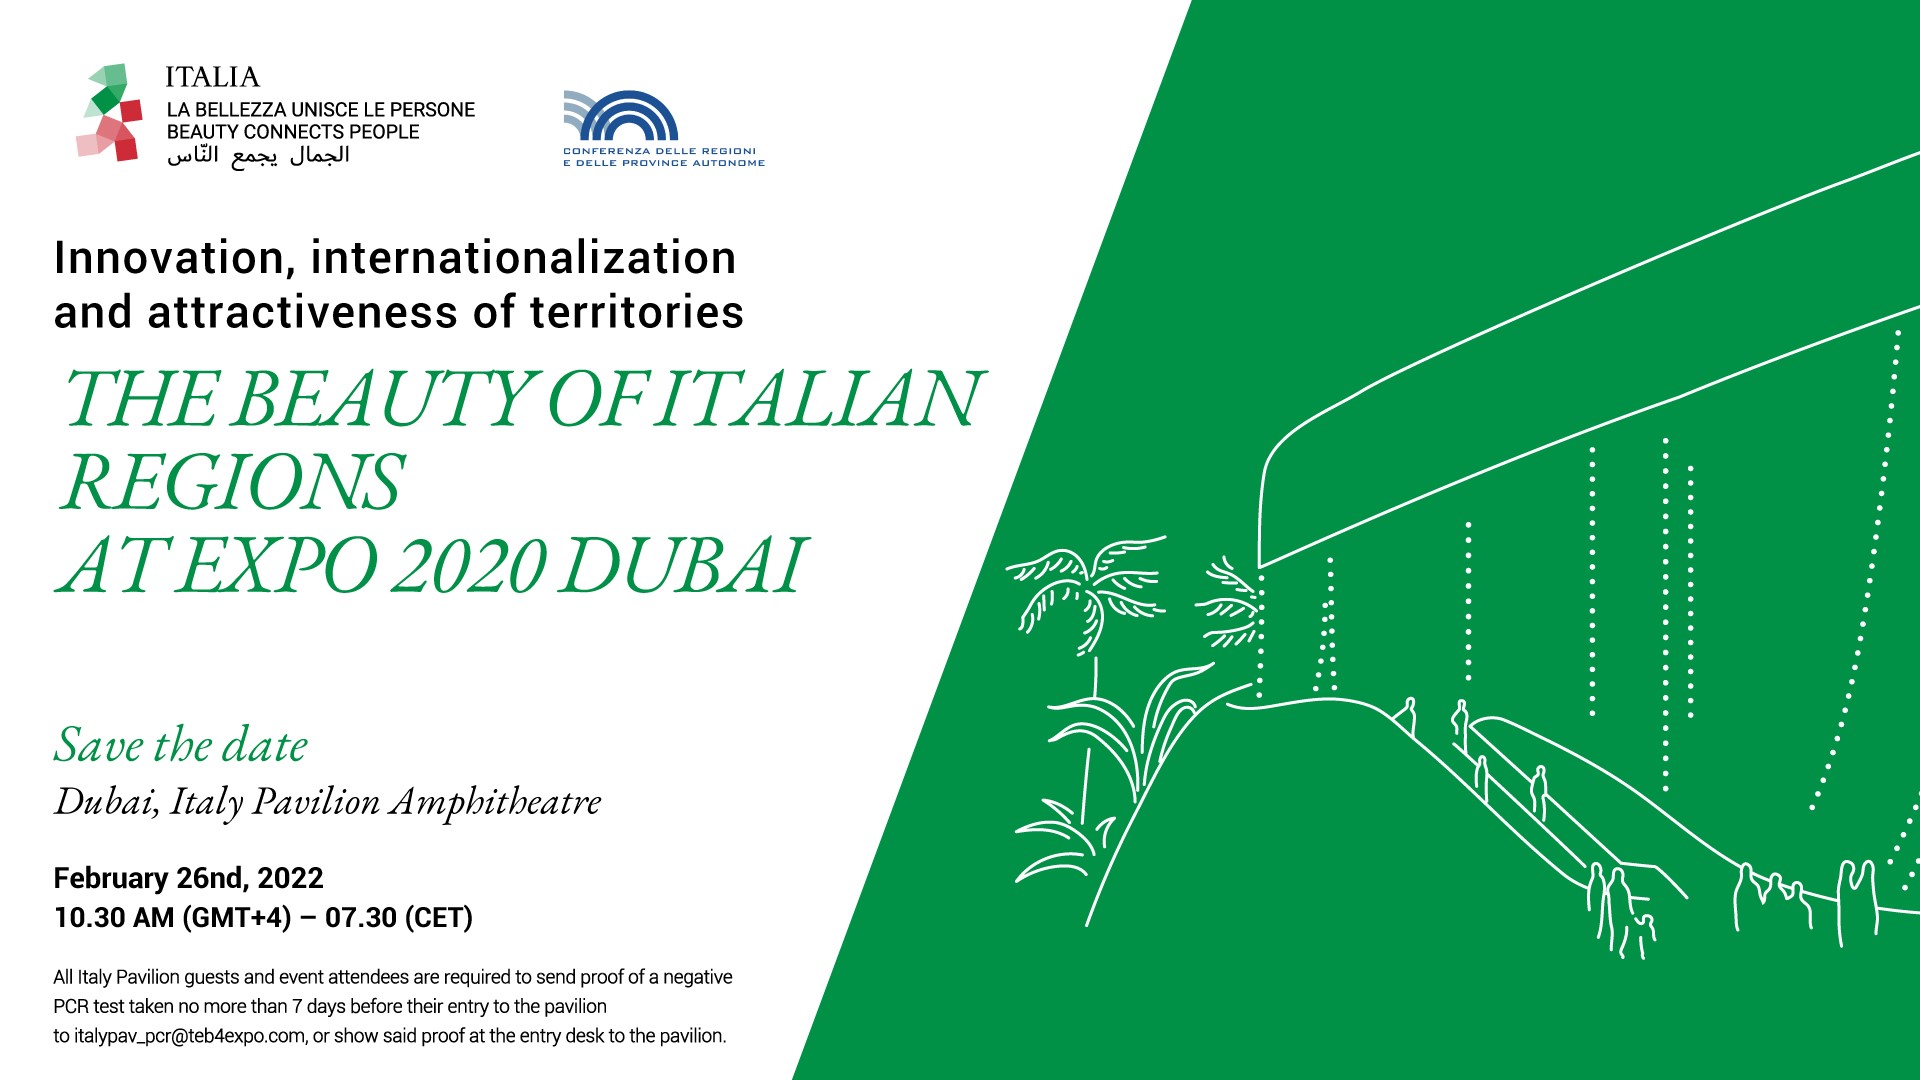 La bellezza delle regioni italiane a Expo 2020 Dubai